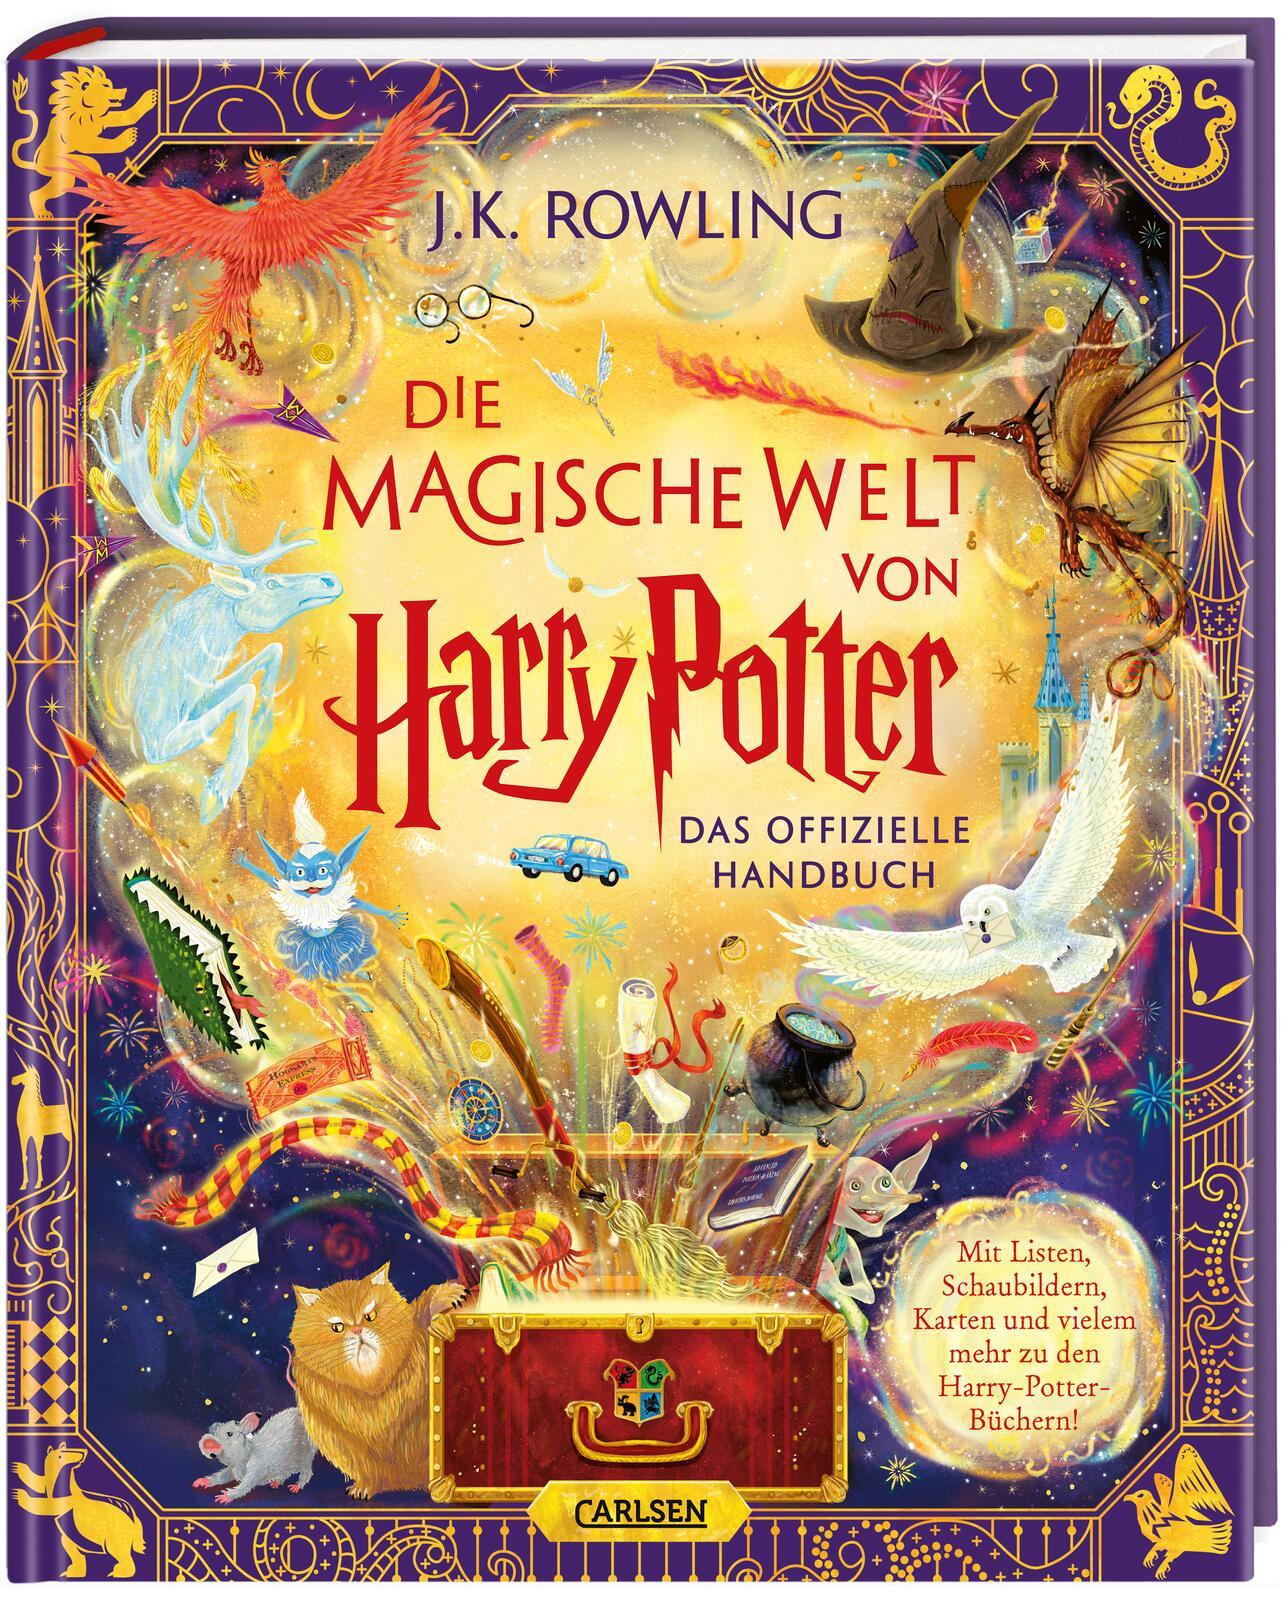 Harry Potter: Die magische Welt (Das offizielle Handbuch) Prächtig illustriert von sieben Künstler*innen und voller überraschender Details | Hochwertiges Geschenkbuch nicht nur für Potterheads